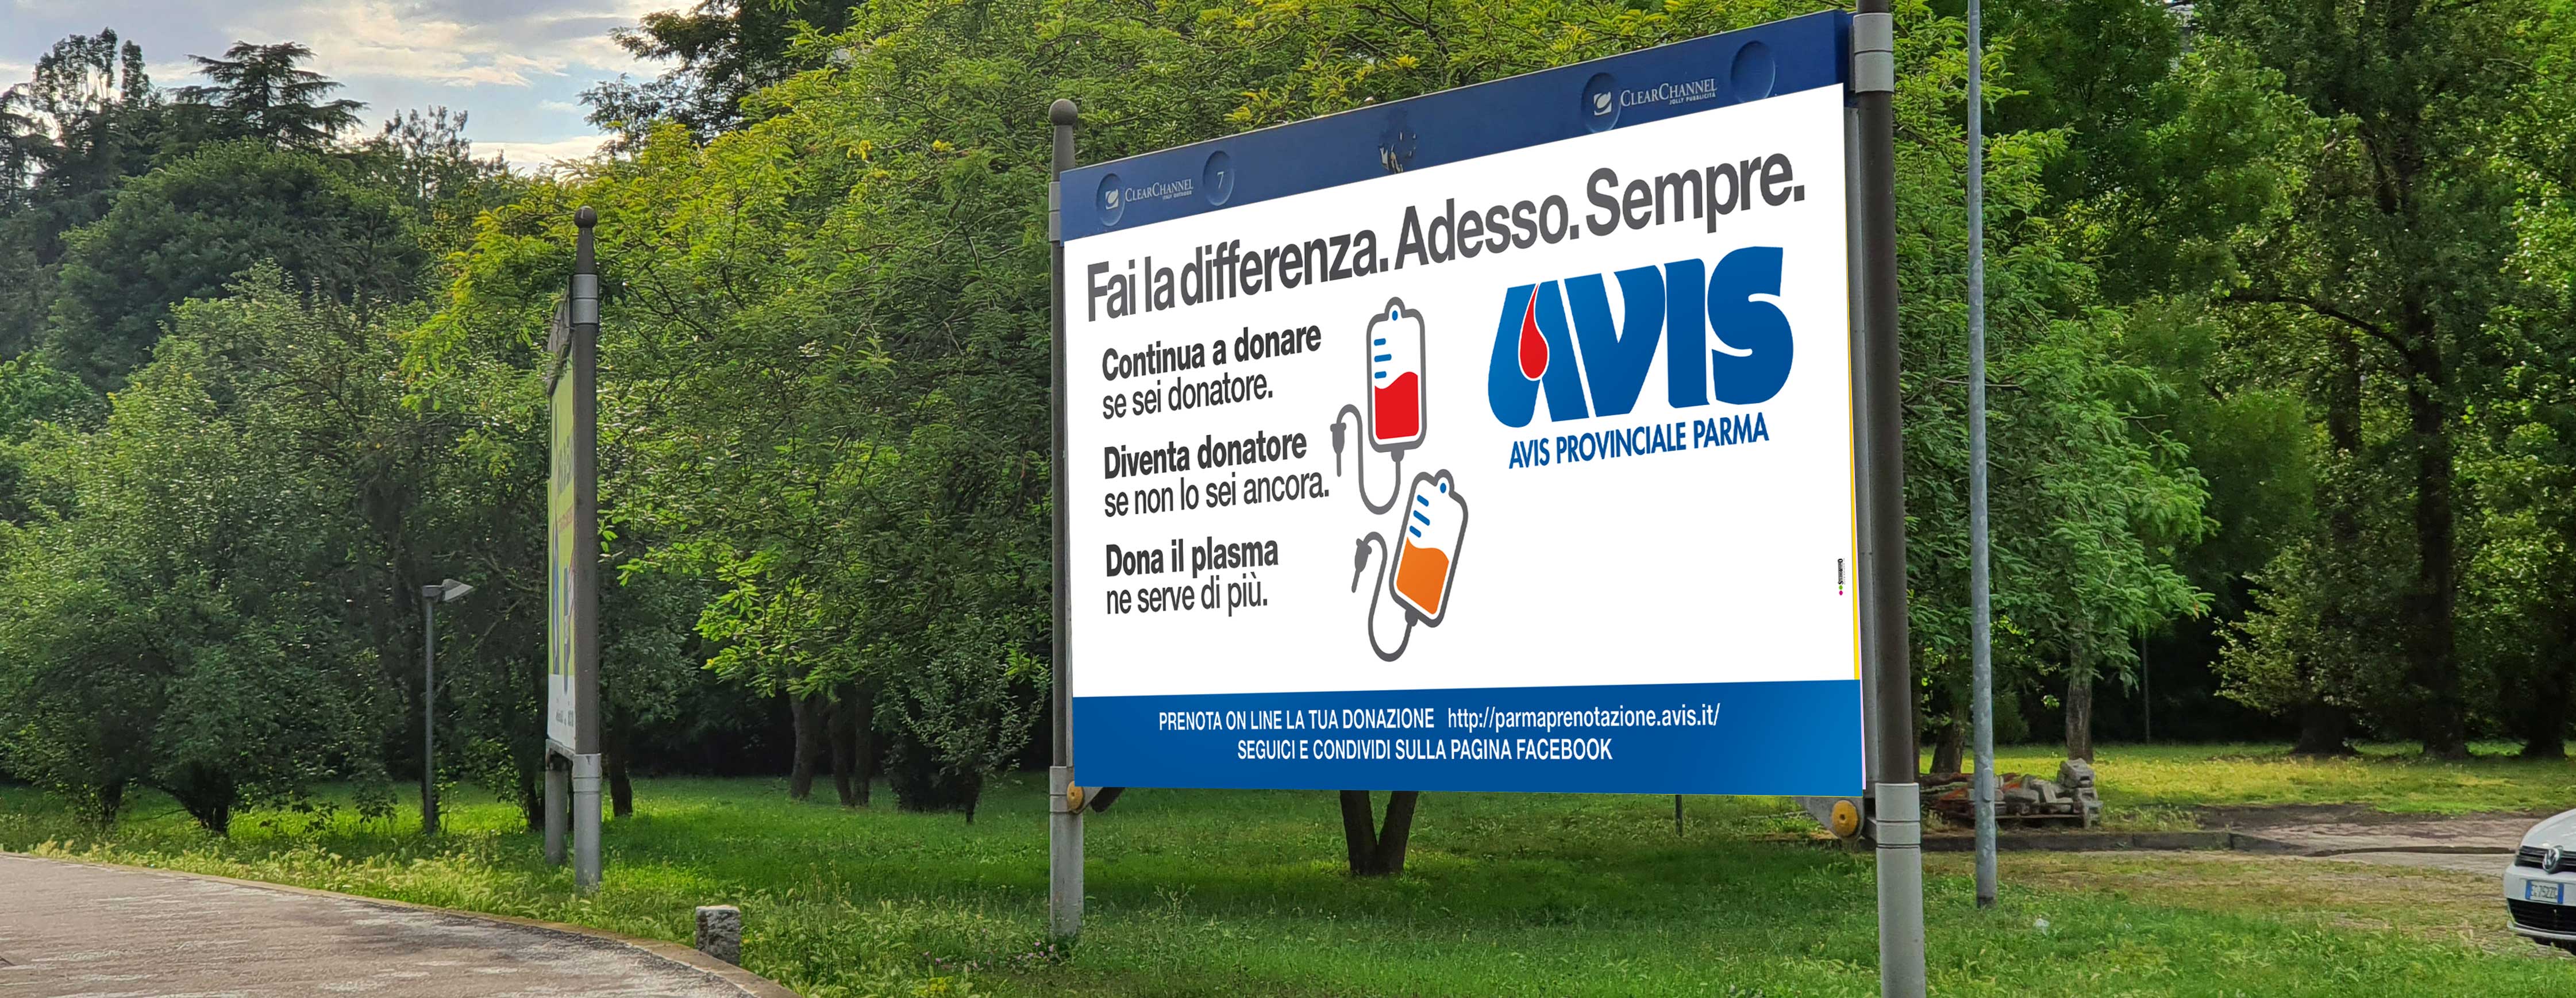 Avis_advertising